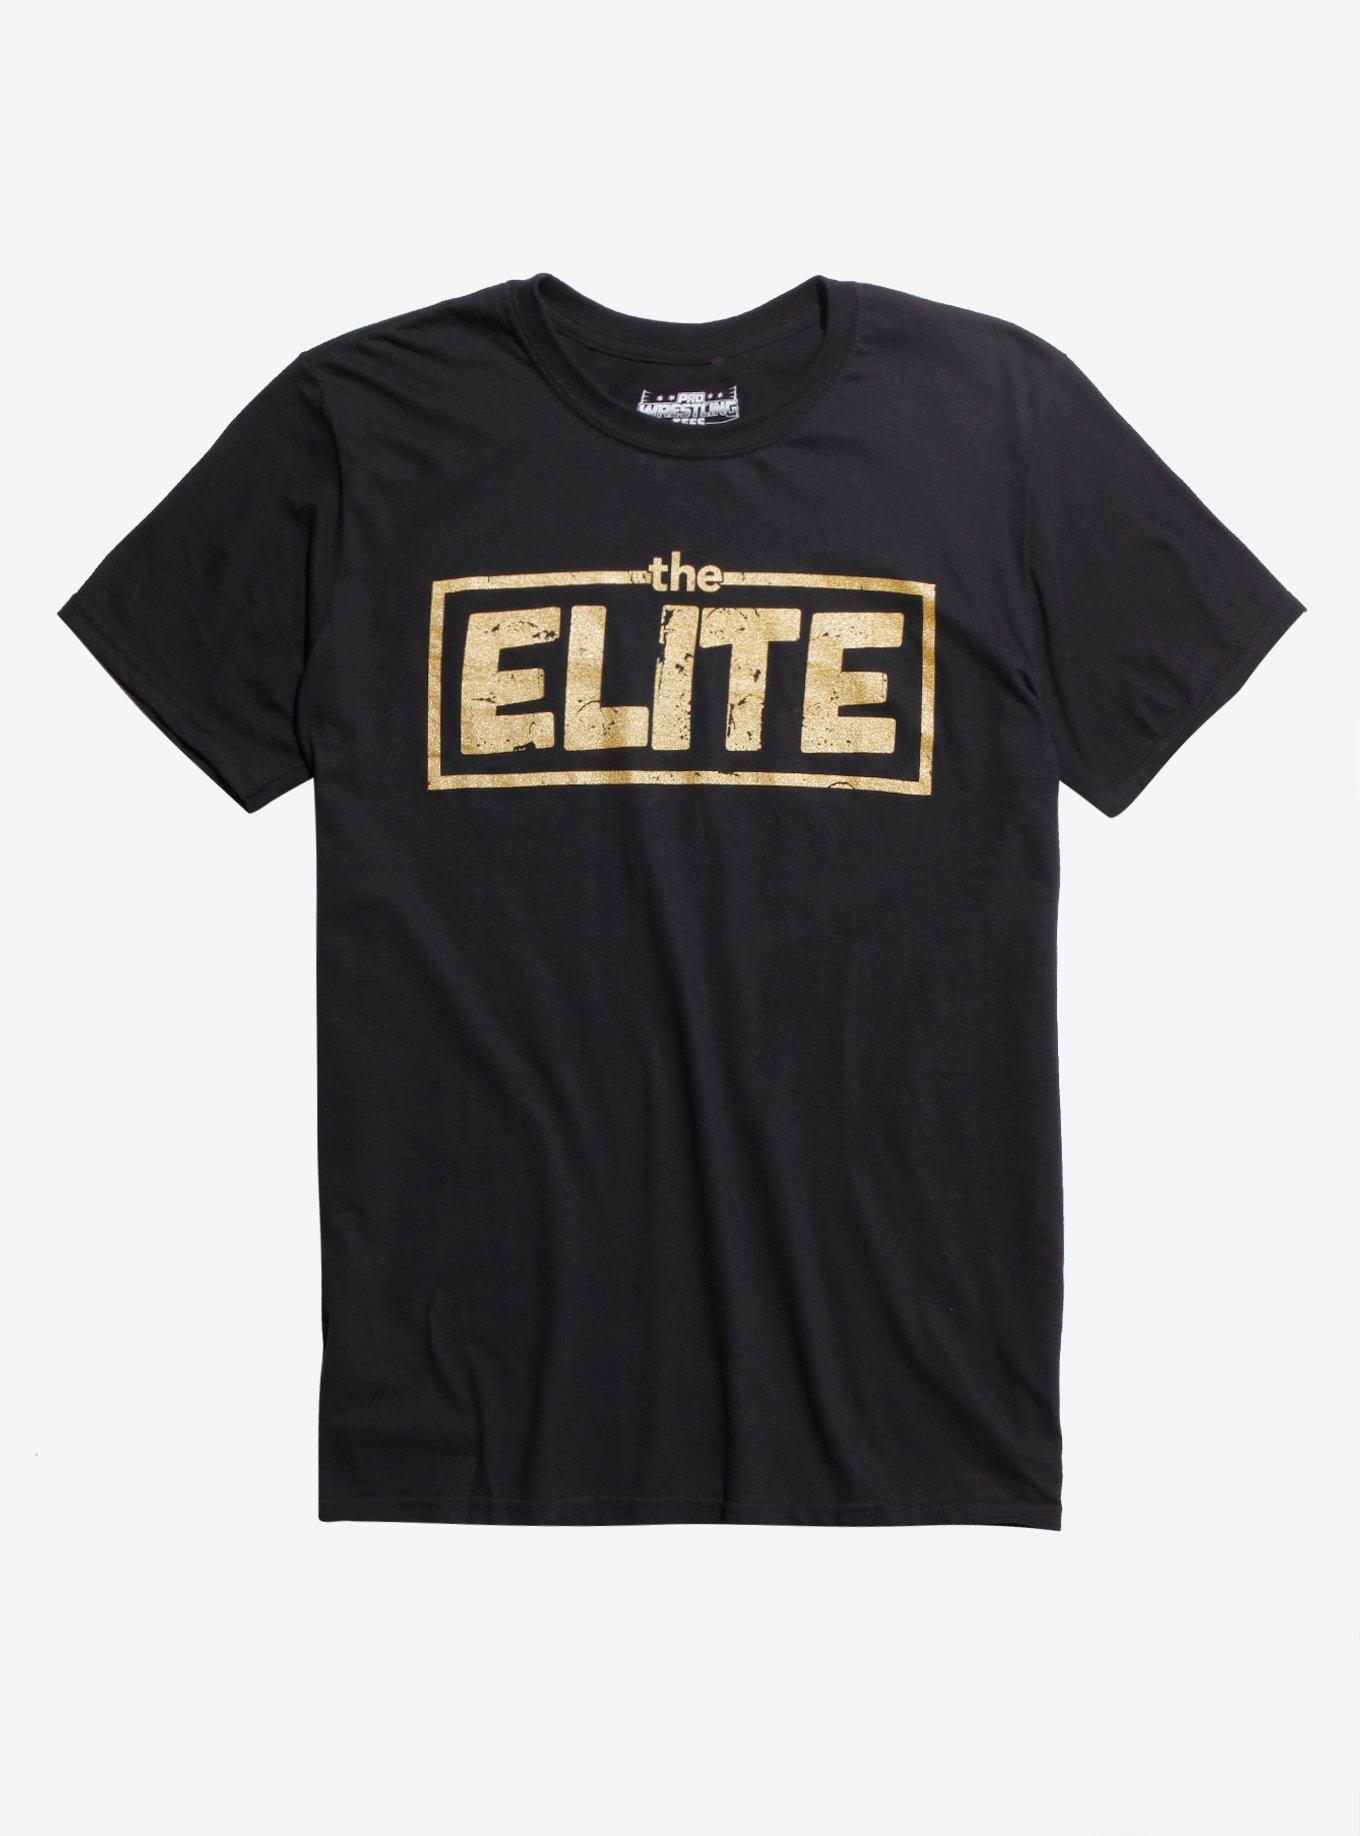 New Japan Pro-Wrestling The Elite Change The World T-Shirt, BLACK, hi-res